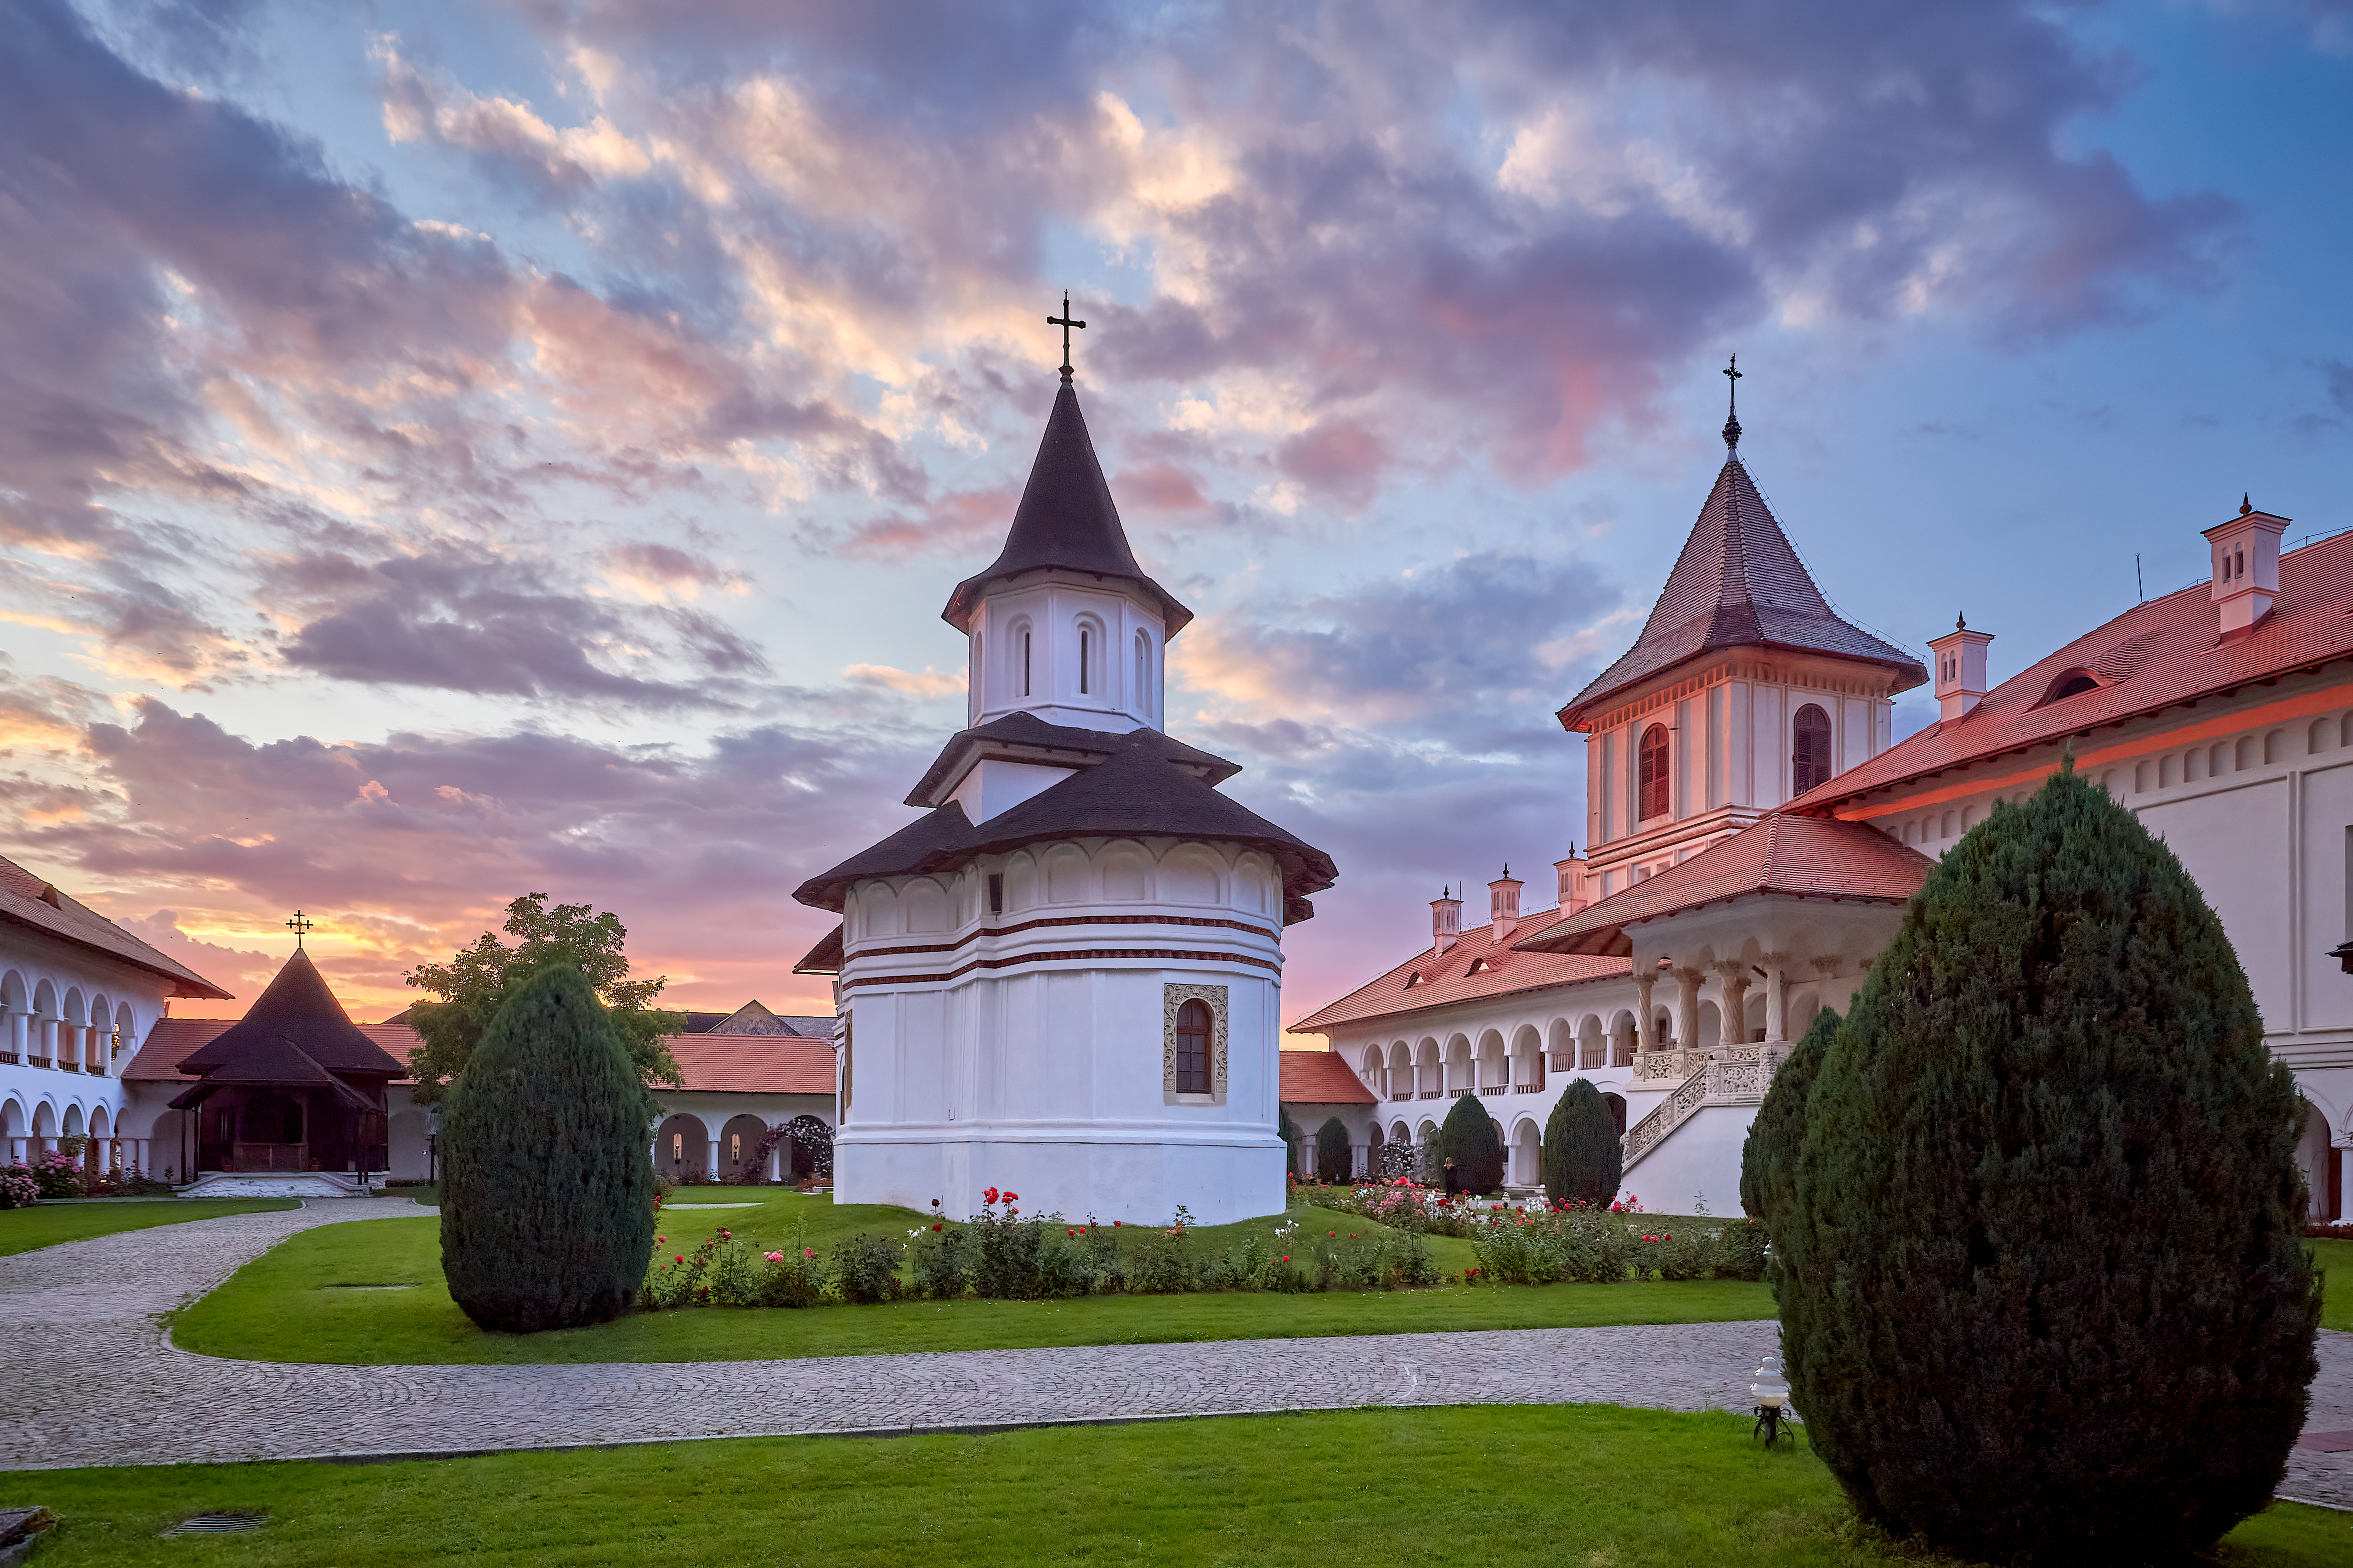 Церковь в Румынии, где иностранцы могут получить вид на жительство